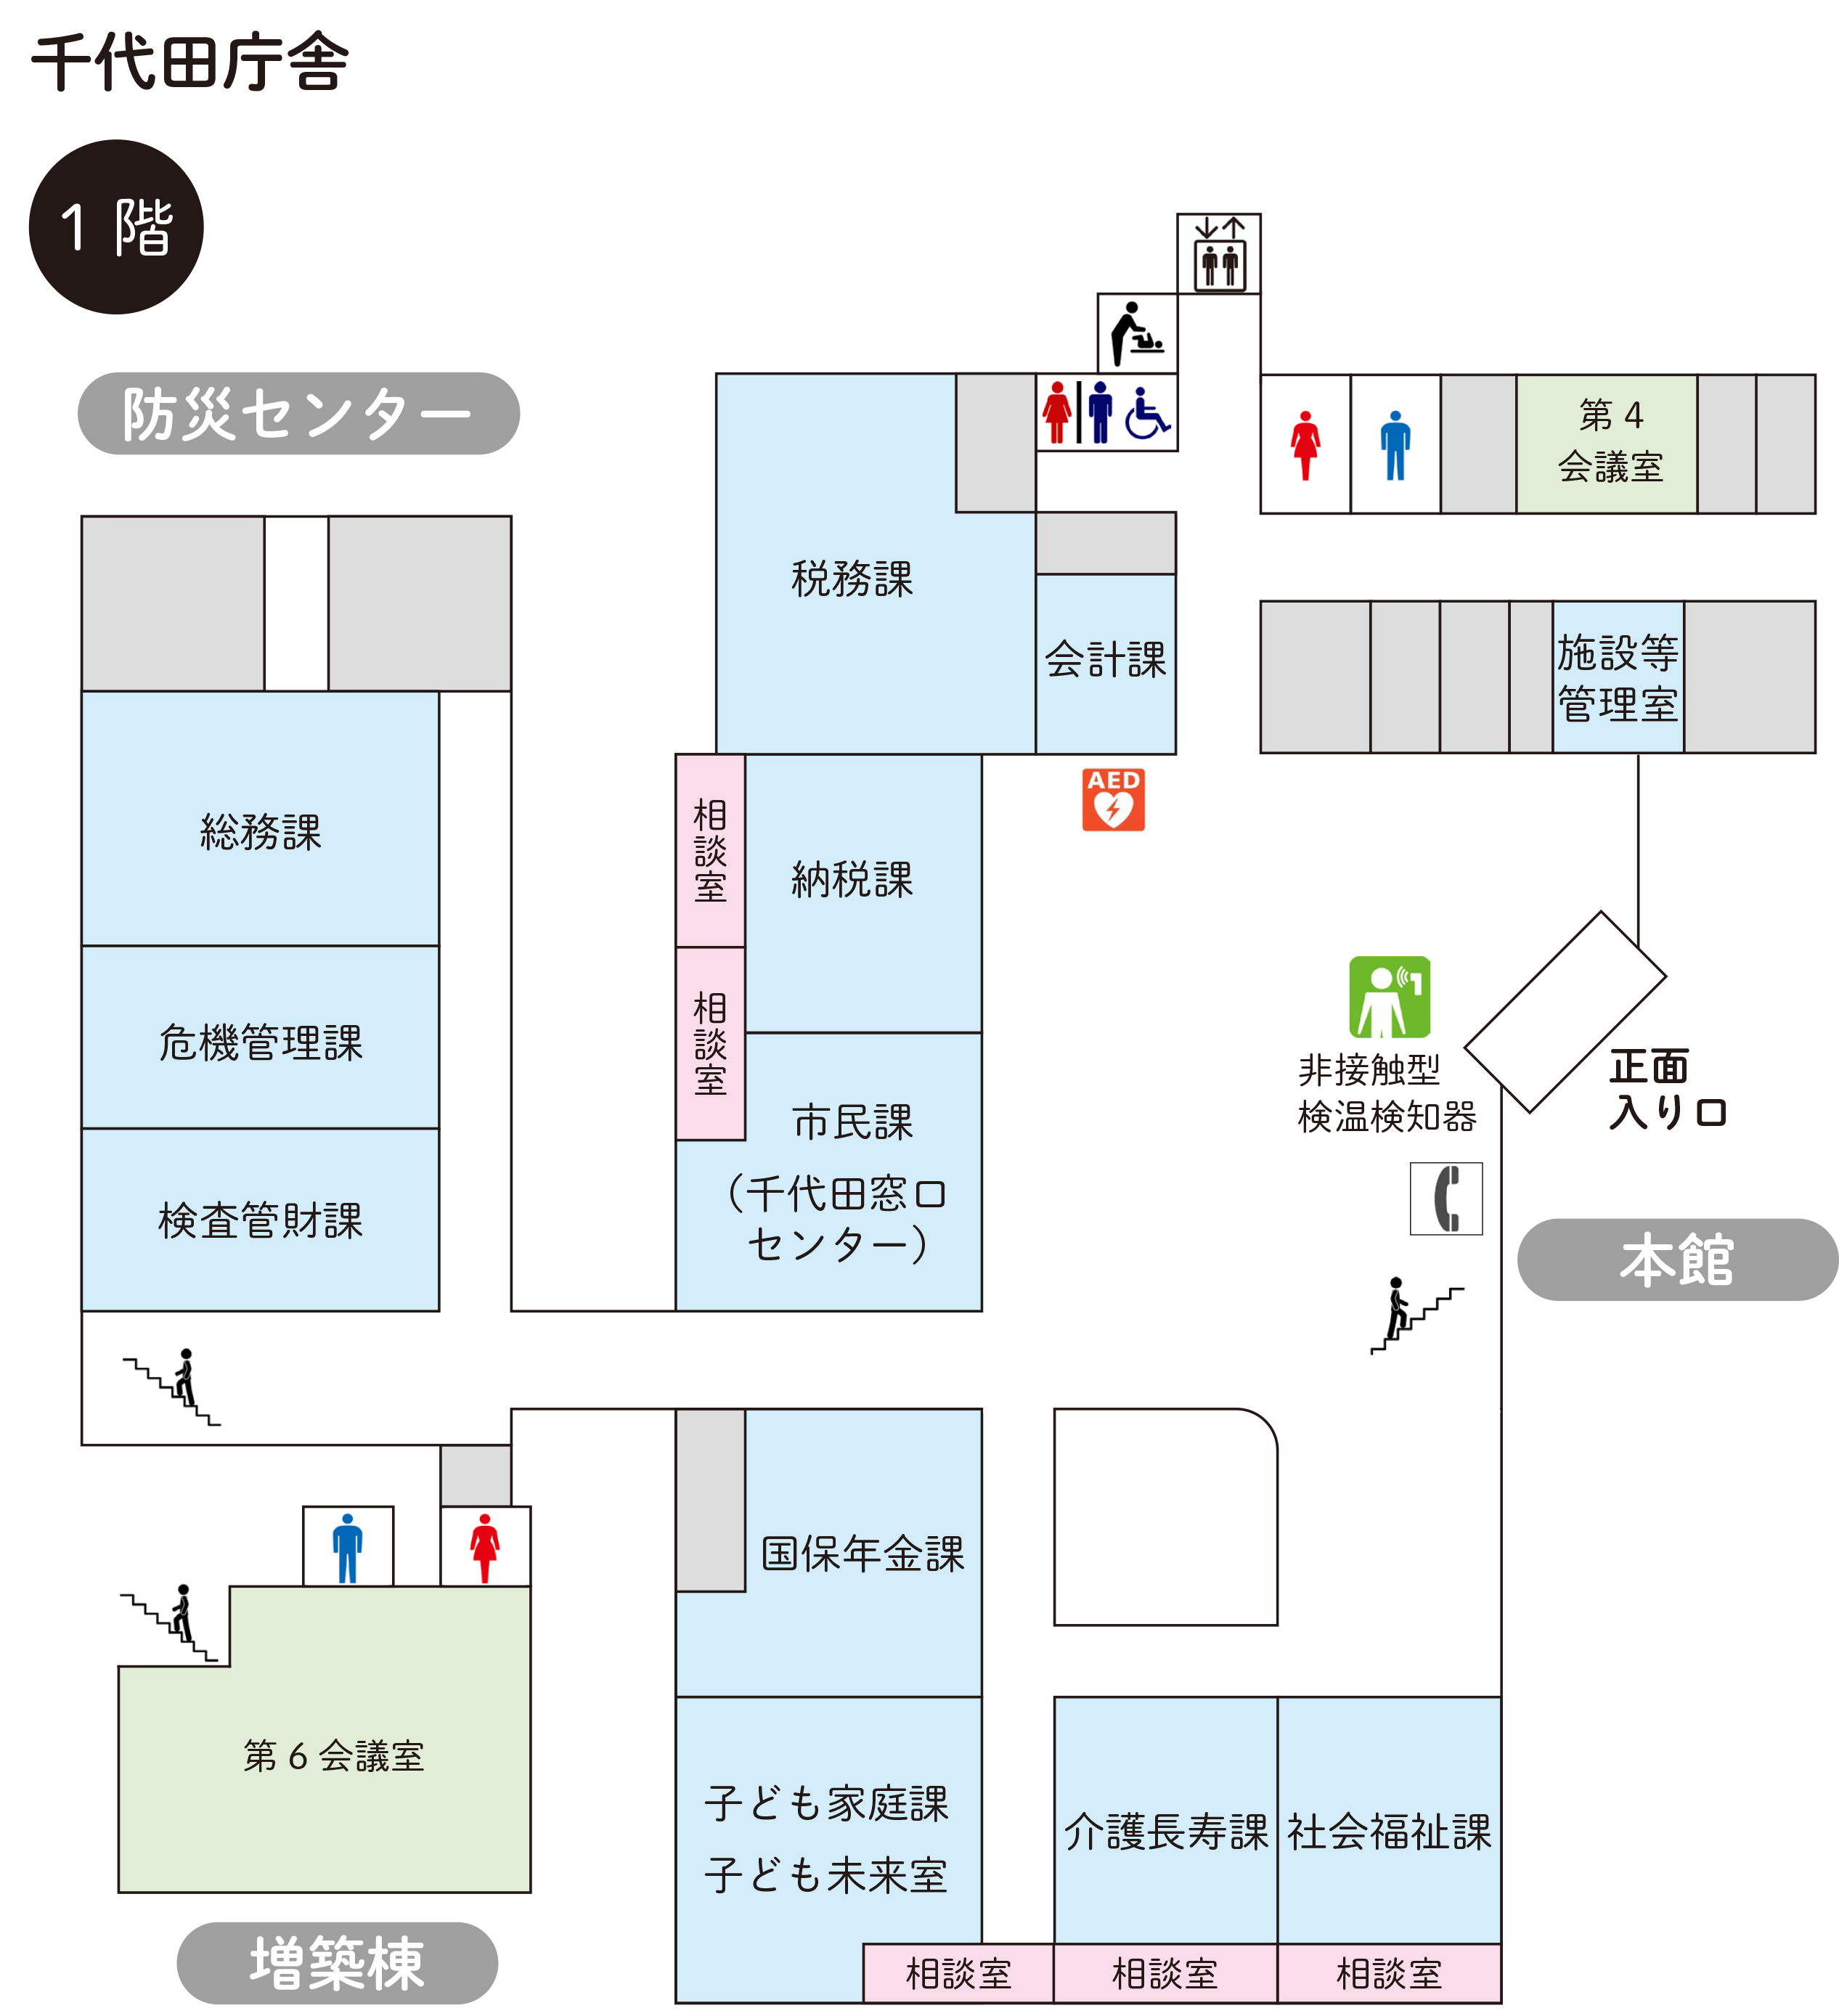 千代田庁舎1